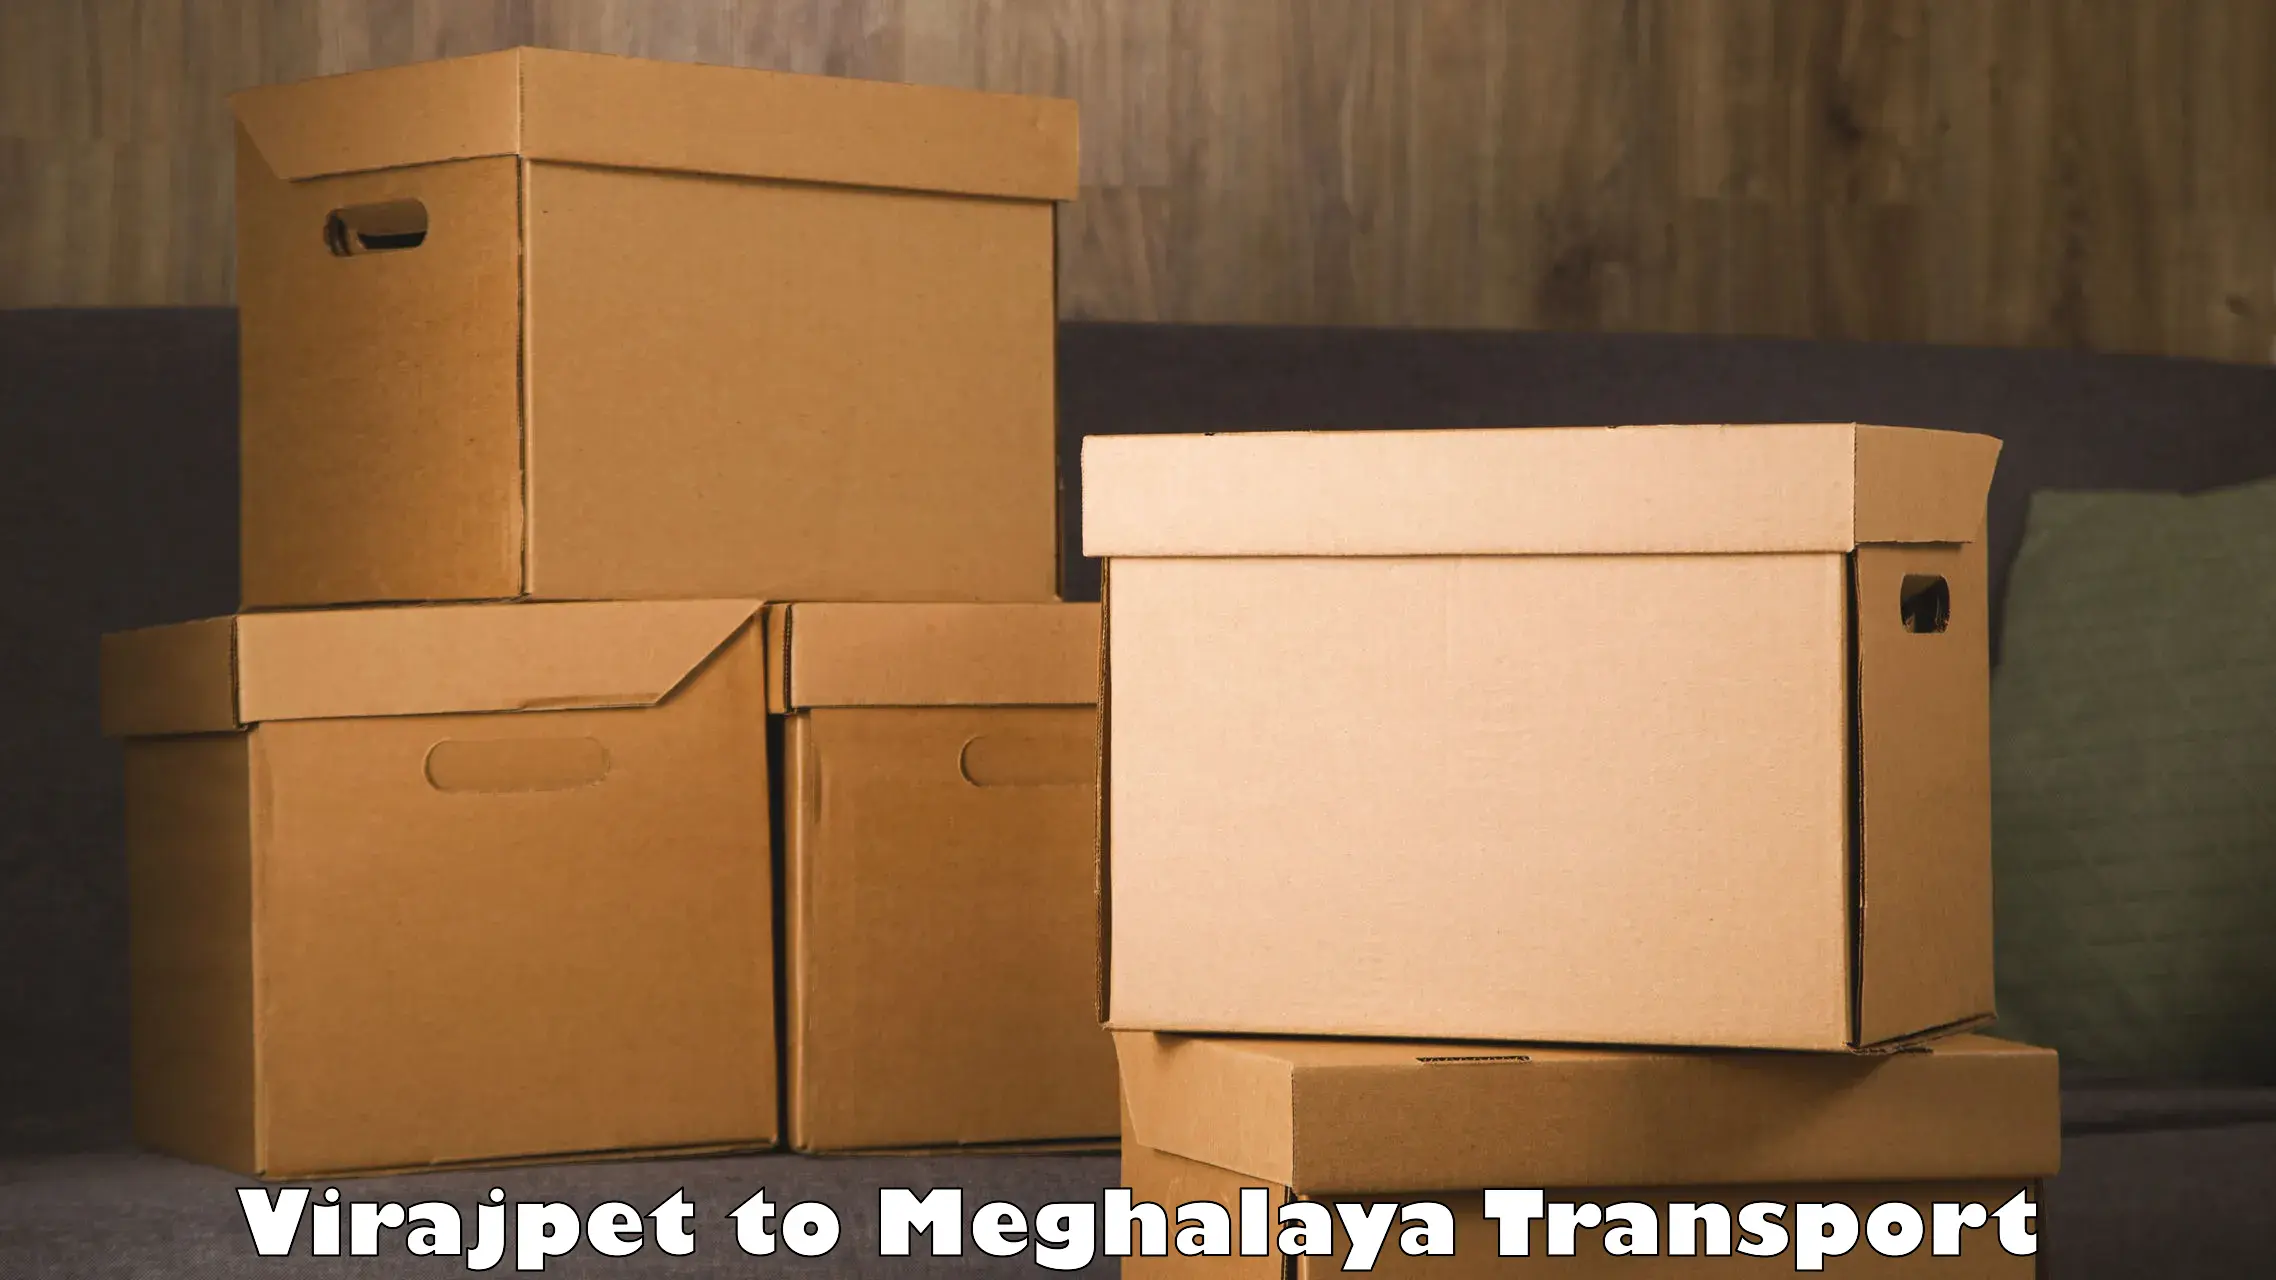 Furniture transport service Virajpet to Meghalaya